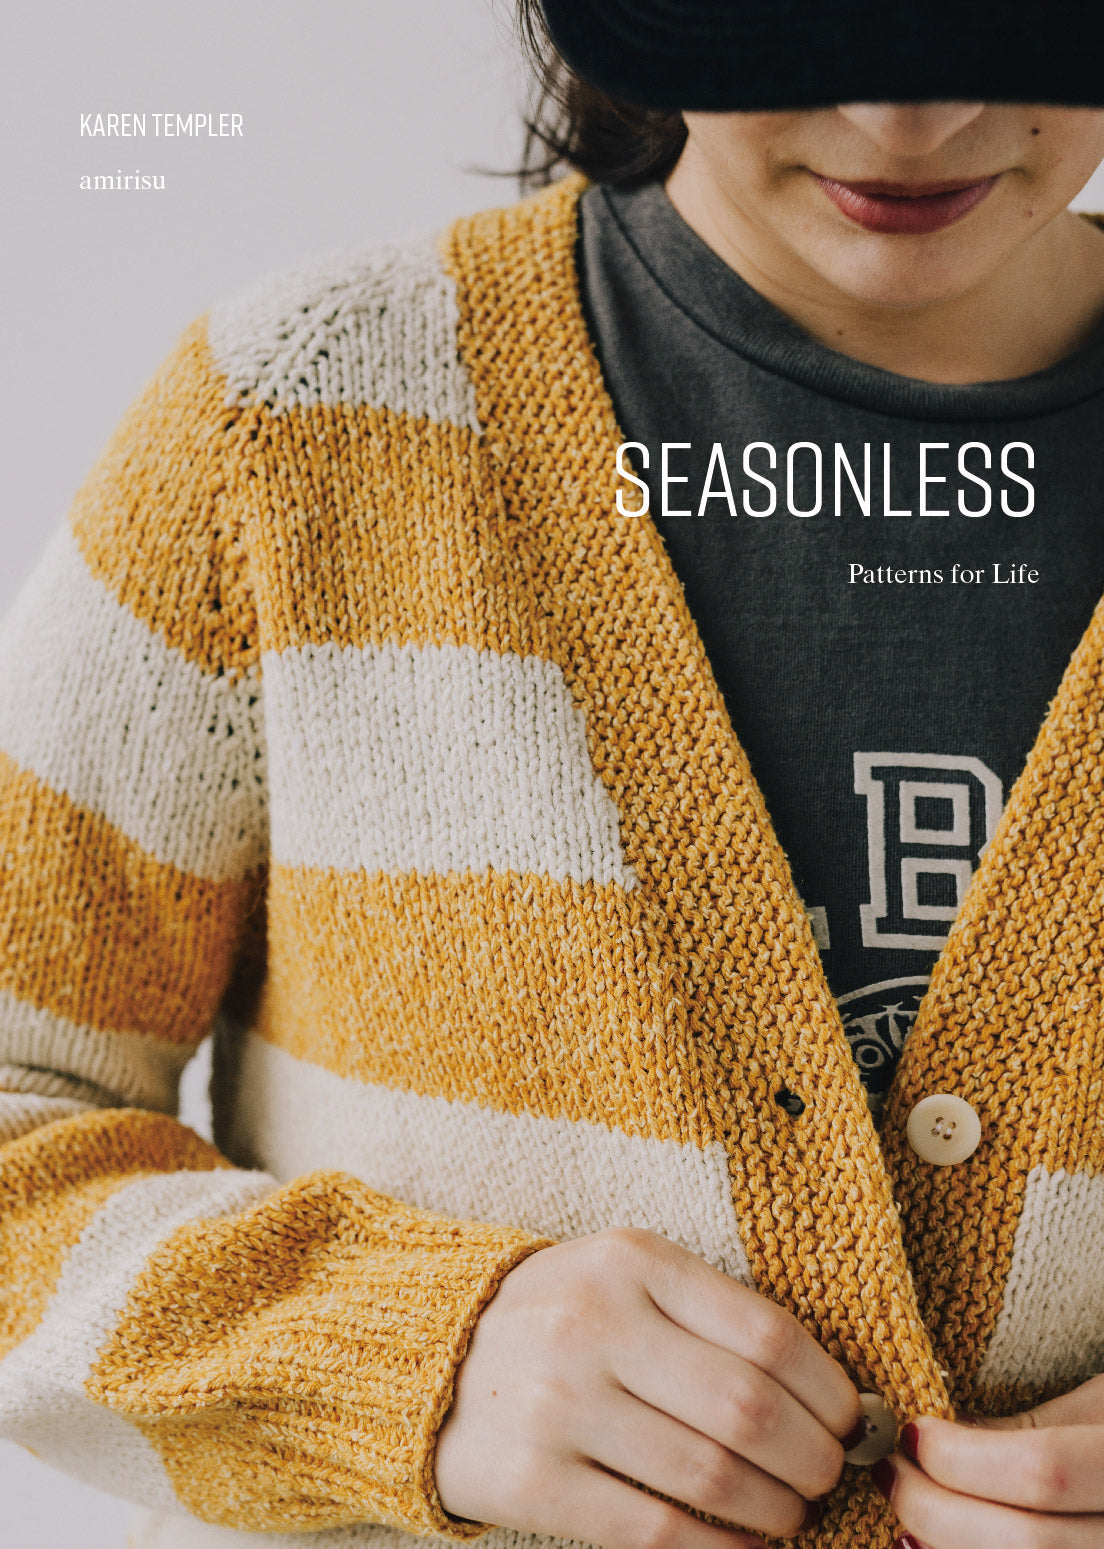 Seasonless: Patterns for Life by Karen Templer + amirisu